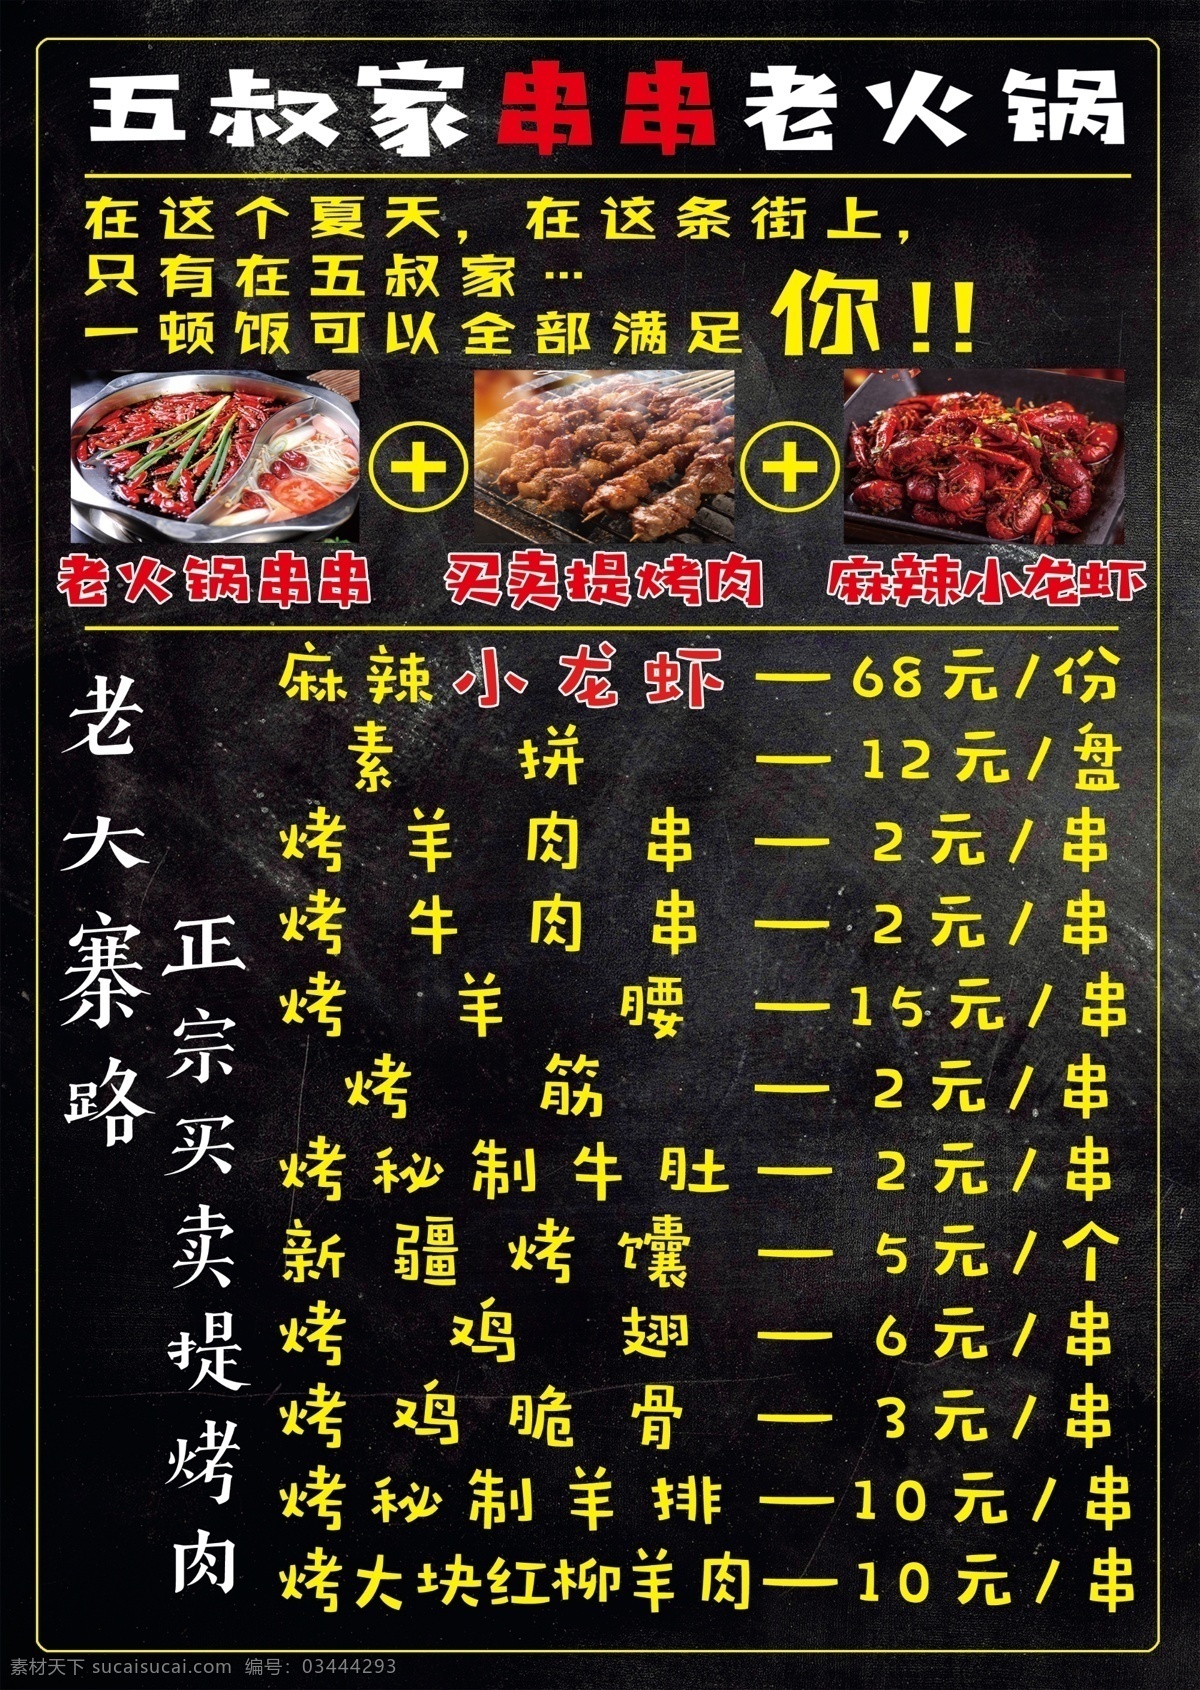 烤肉菜单 新疆烤肉 烤肉 小龙虾 串串 羊肉串 菜单菜谱